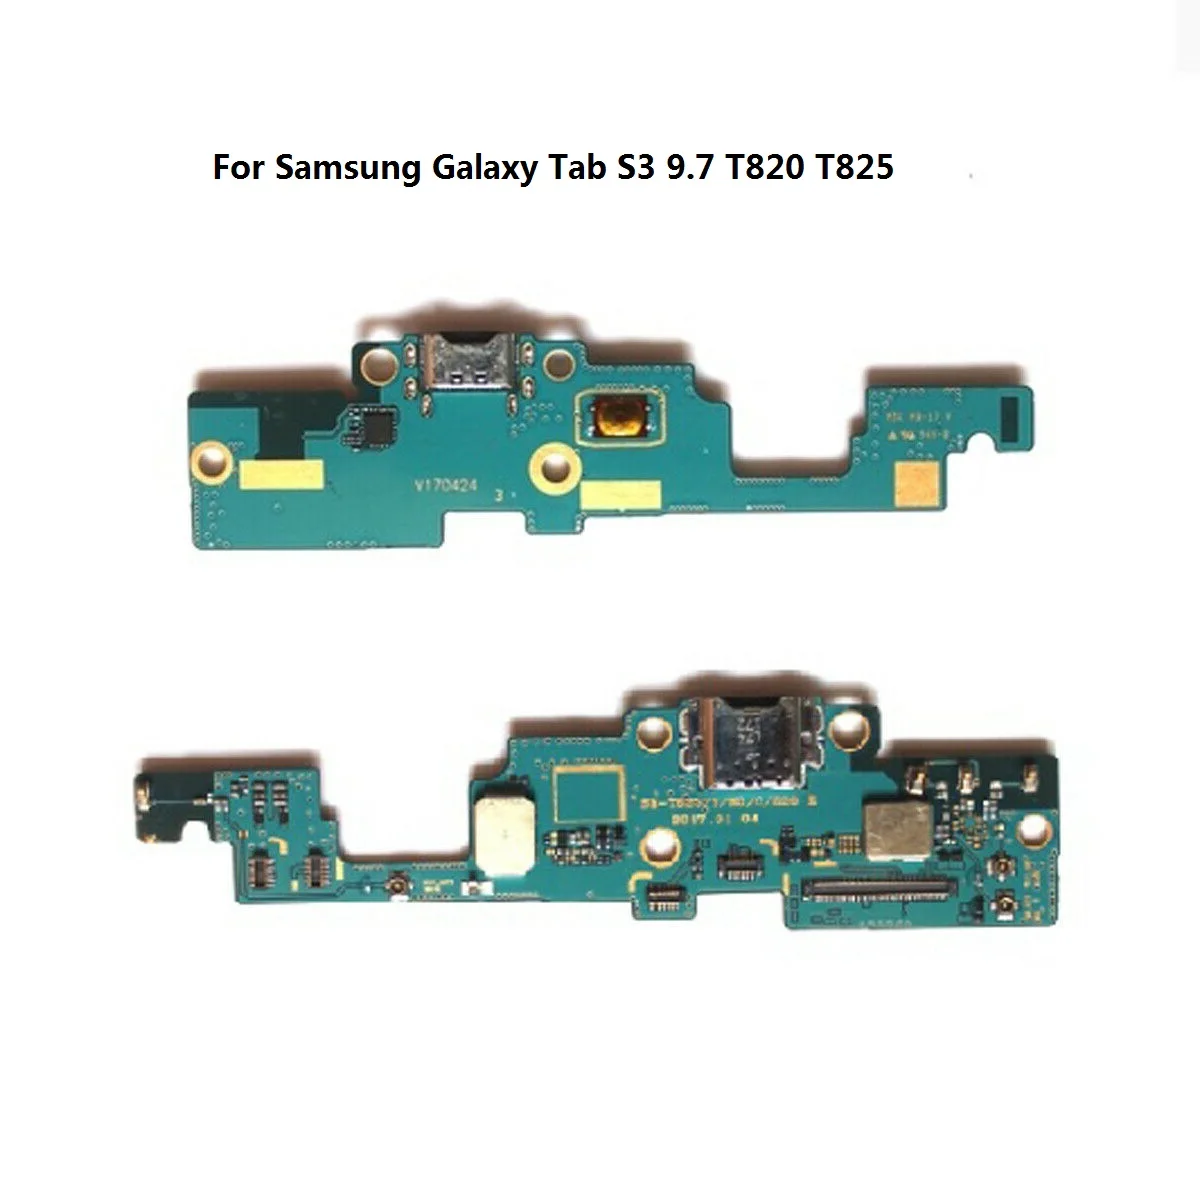 10 шт./лот samsung Галактики вкладка Pro 8,4 T320 T321 T700 T710 T310 T311 T810 T820 N5100 P6200 зарядное устройство разъём для зарядки Порты и разъёмы гибкий кабель - Цвет: T820 T825